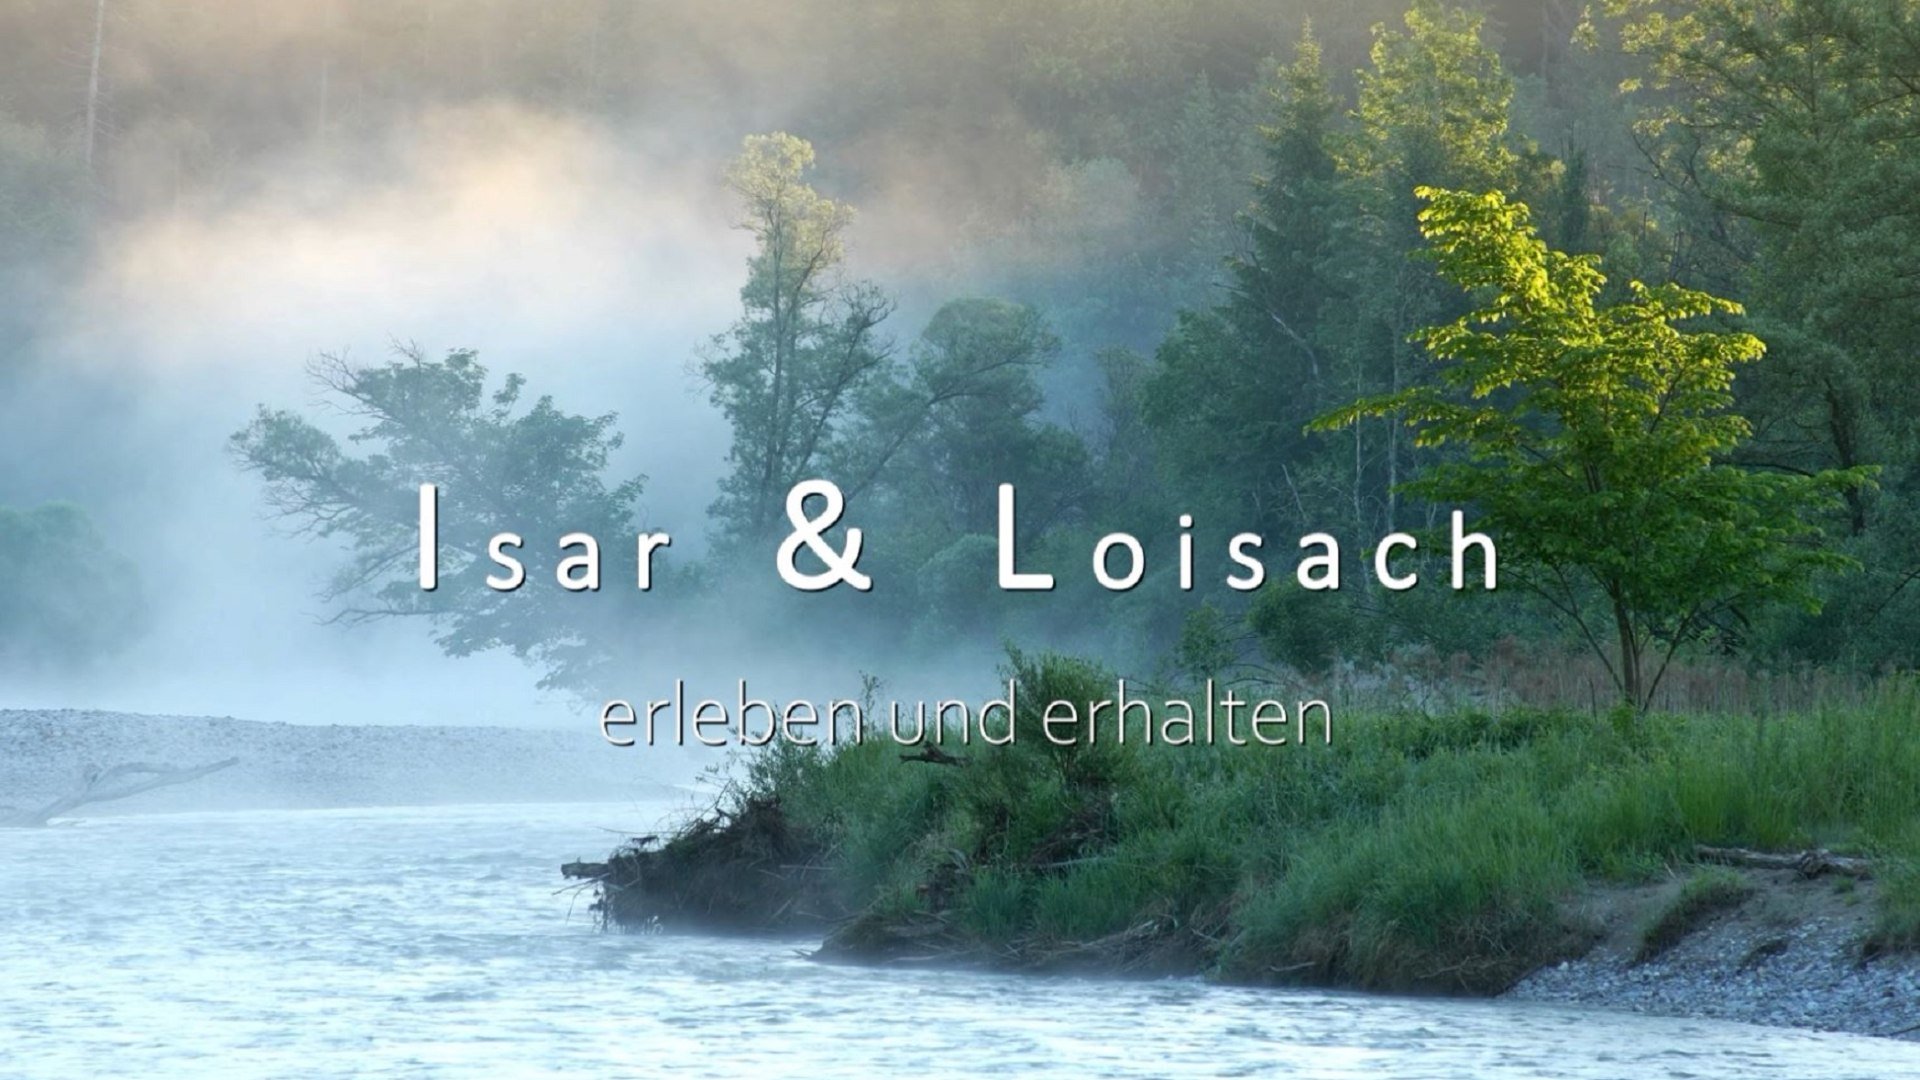 Isar und Loisach - Naturschutz (Videotitel)